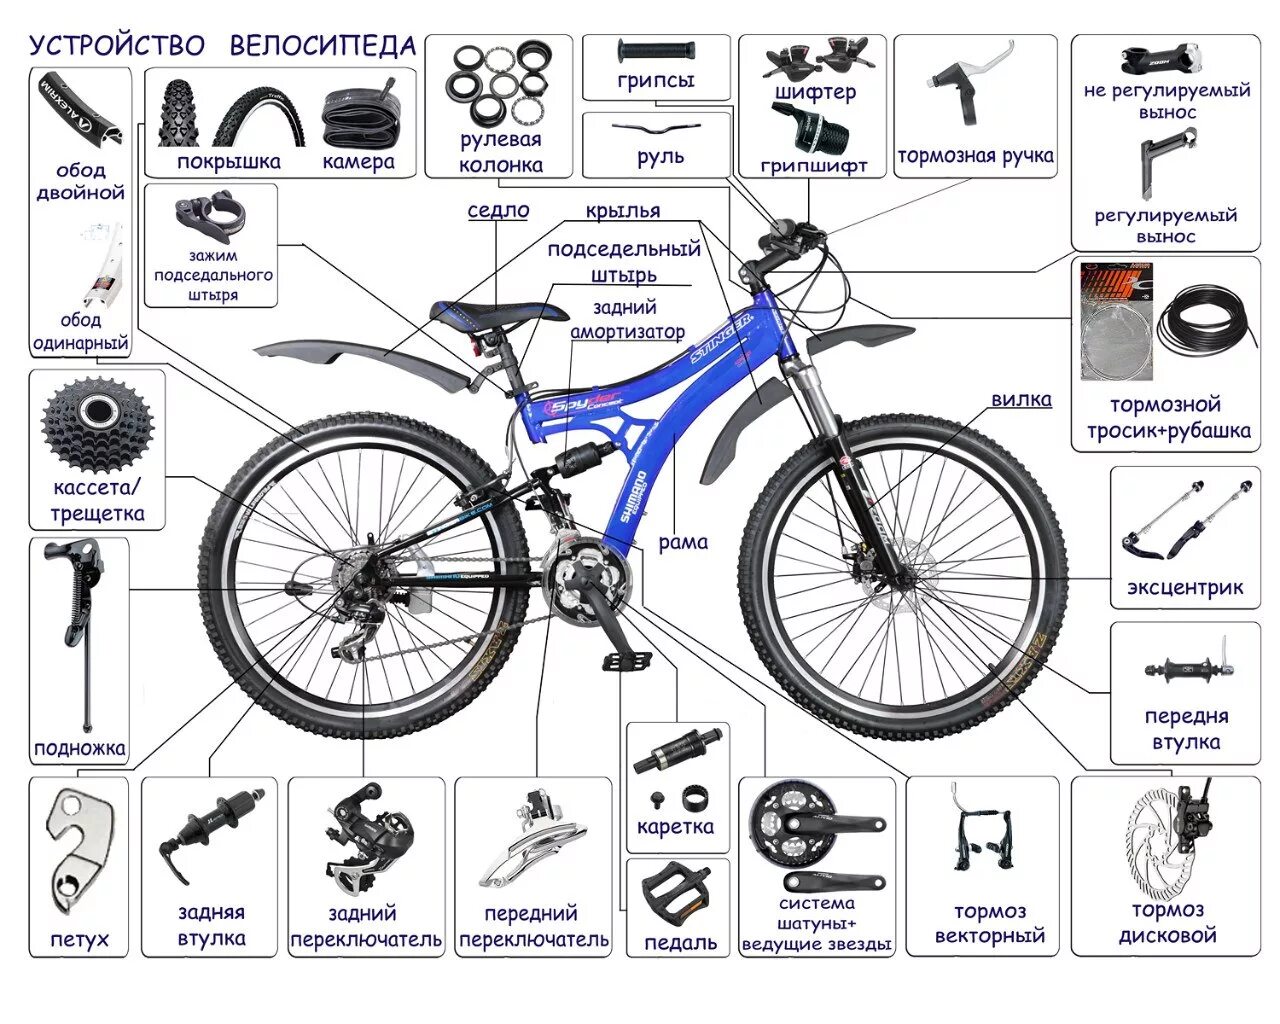 Схема велосипеда с названием деталей стелс. Строение горного велосипеда схема. Скоростной велосипед стелс строение. Схема сборки скоростного велосипеда.